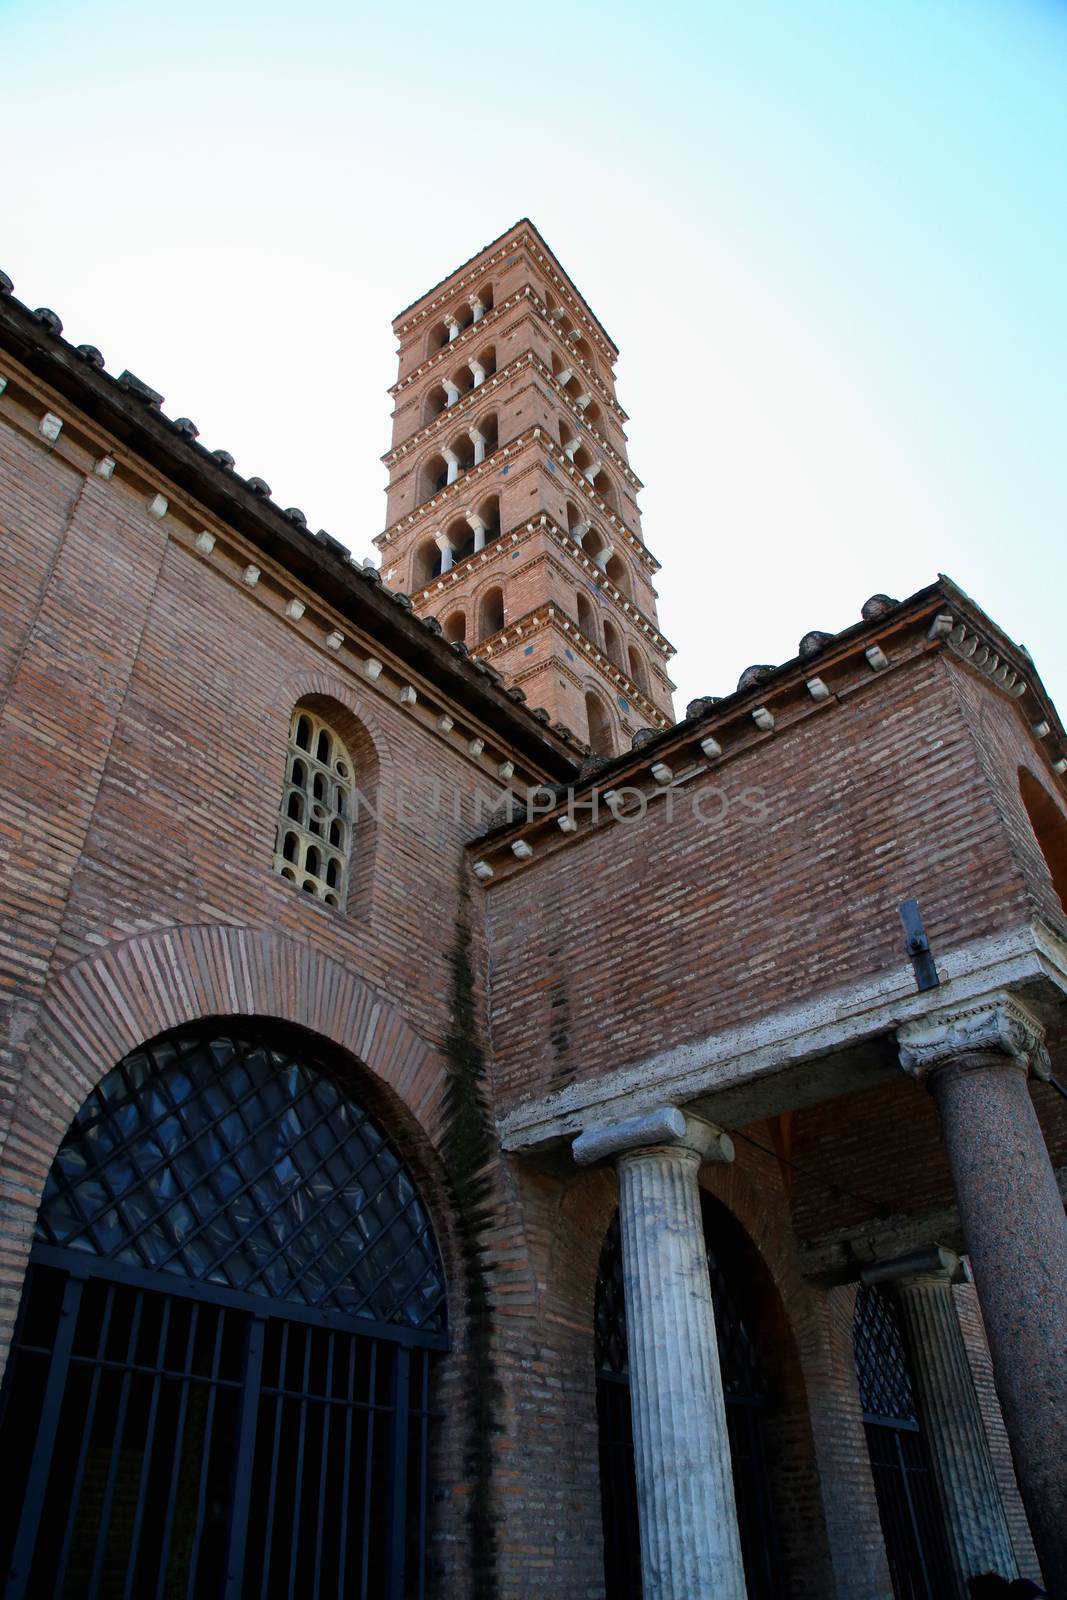 Bocca della Verita, Church of Santa Maria in Cosmedin in Rome, Italy